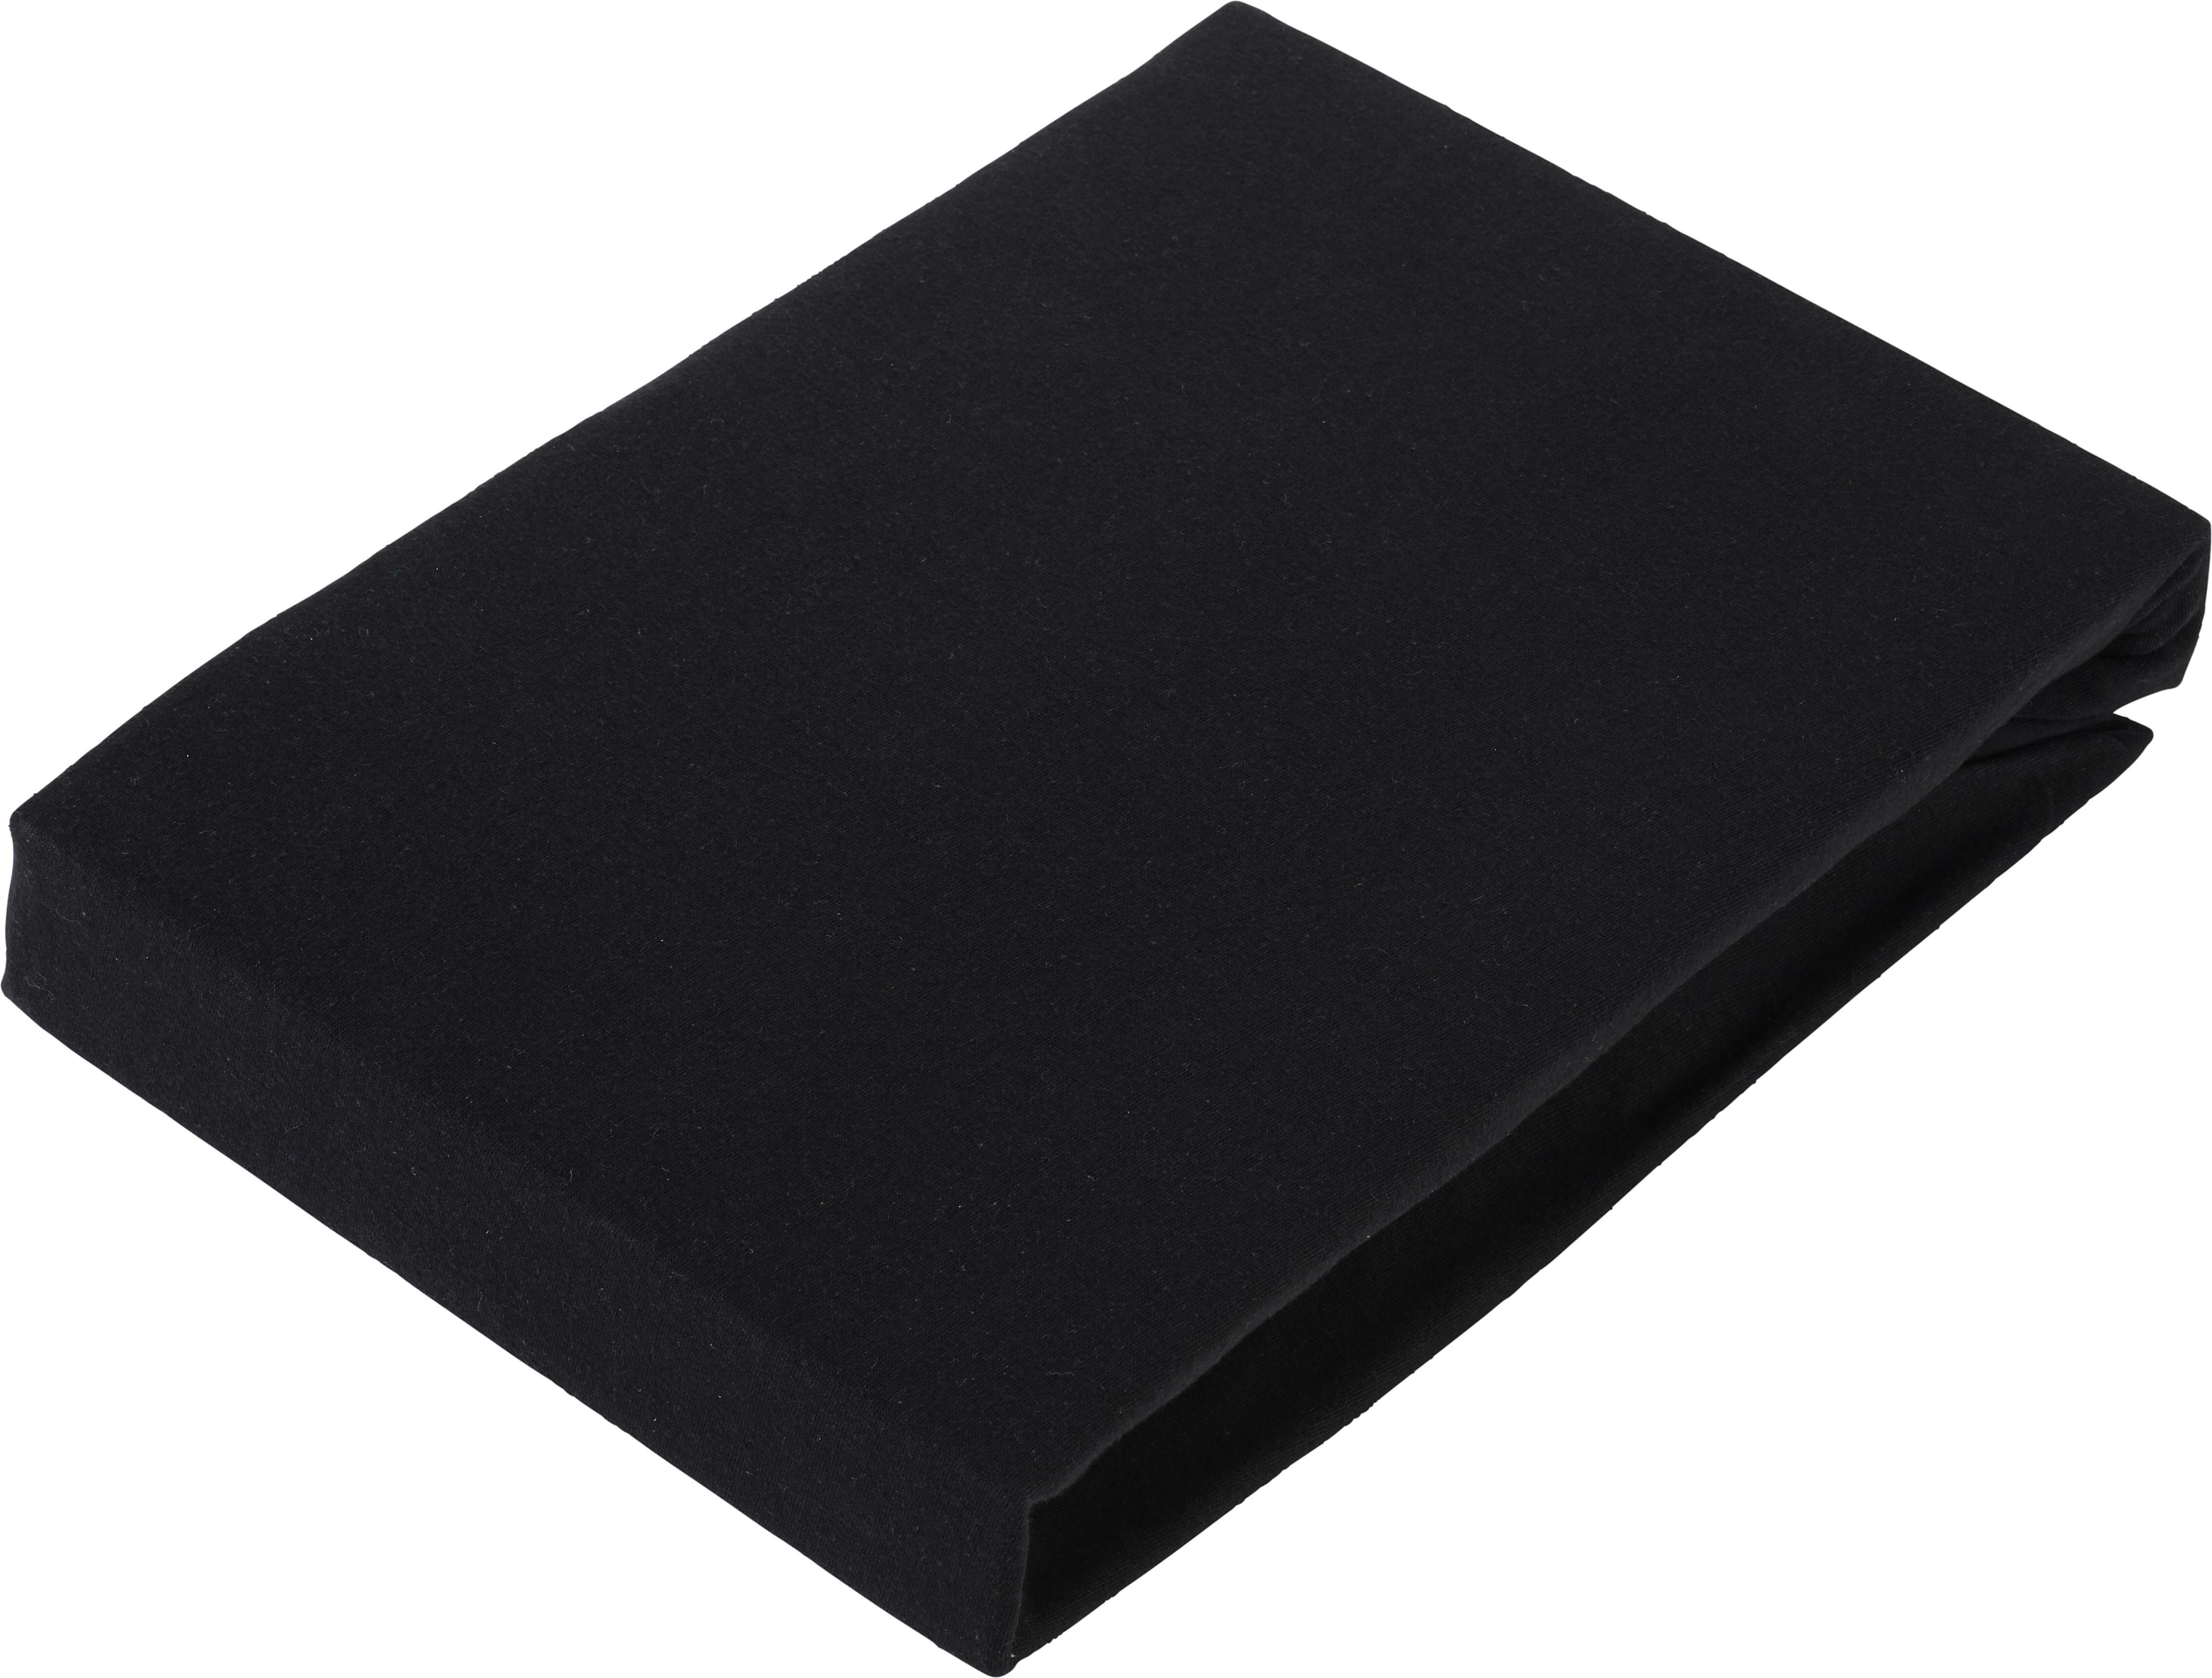 Elastické Prostěradlo Basic, 150/200cm, Černá - černá, textil (150/200cm) - Modern Living